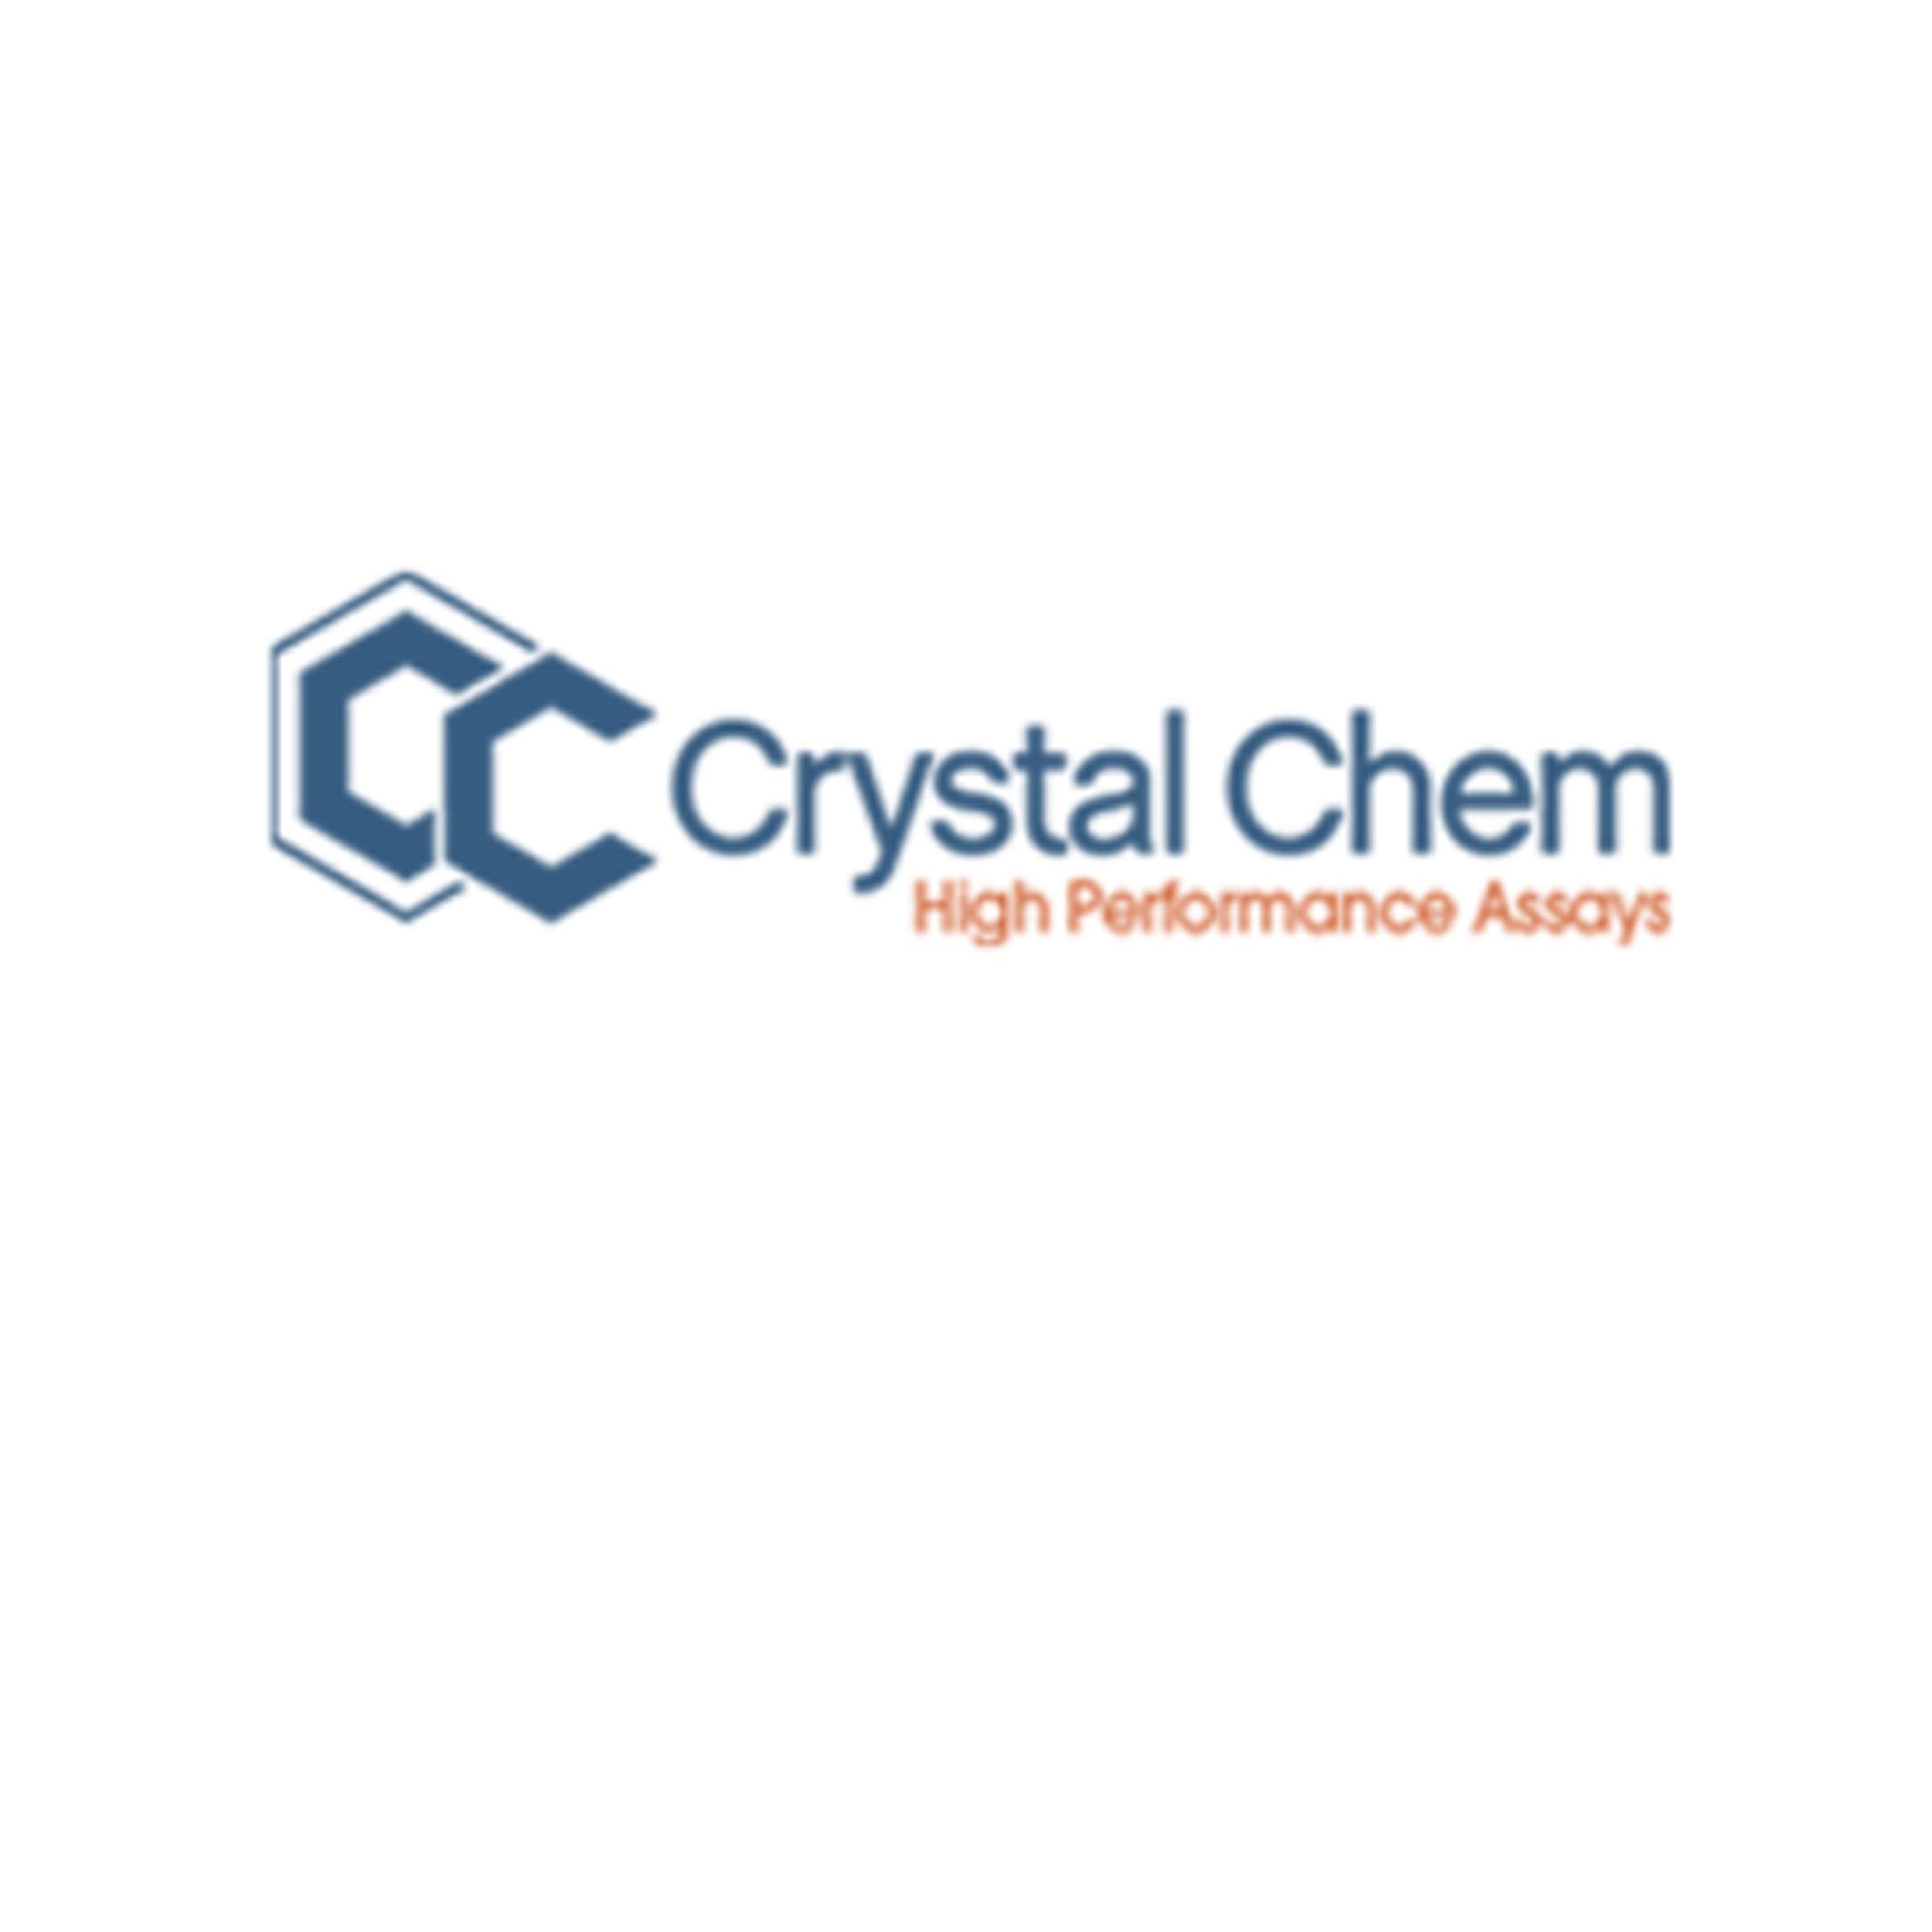 Crystal Chem 80109 Glycated Serum Protein (GSP) Kit，糖化血清蛋白（GSP）试剂盒，现货